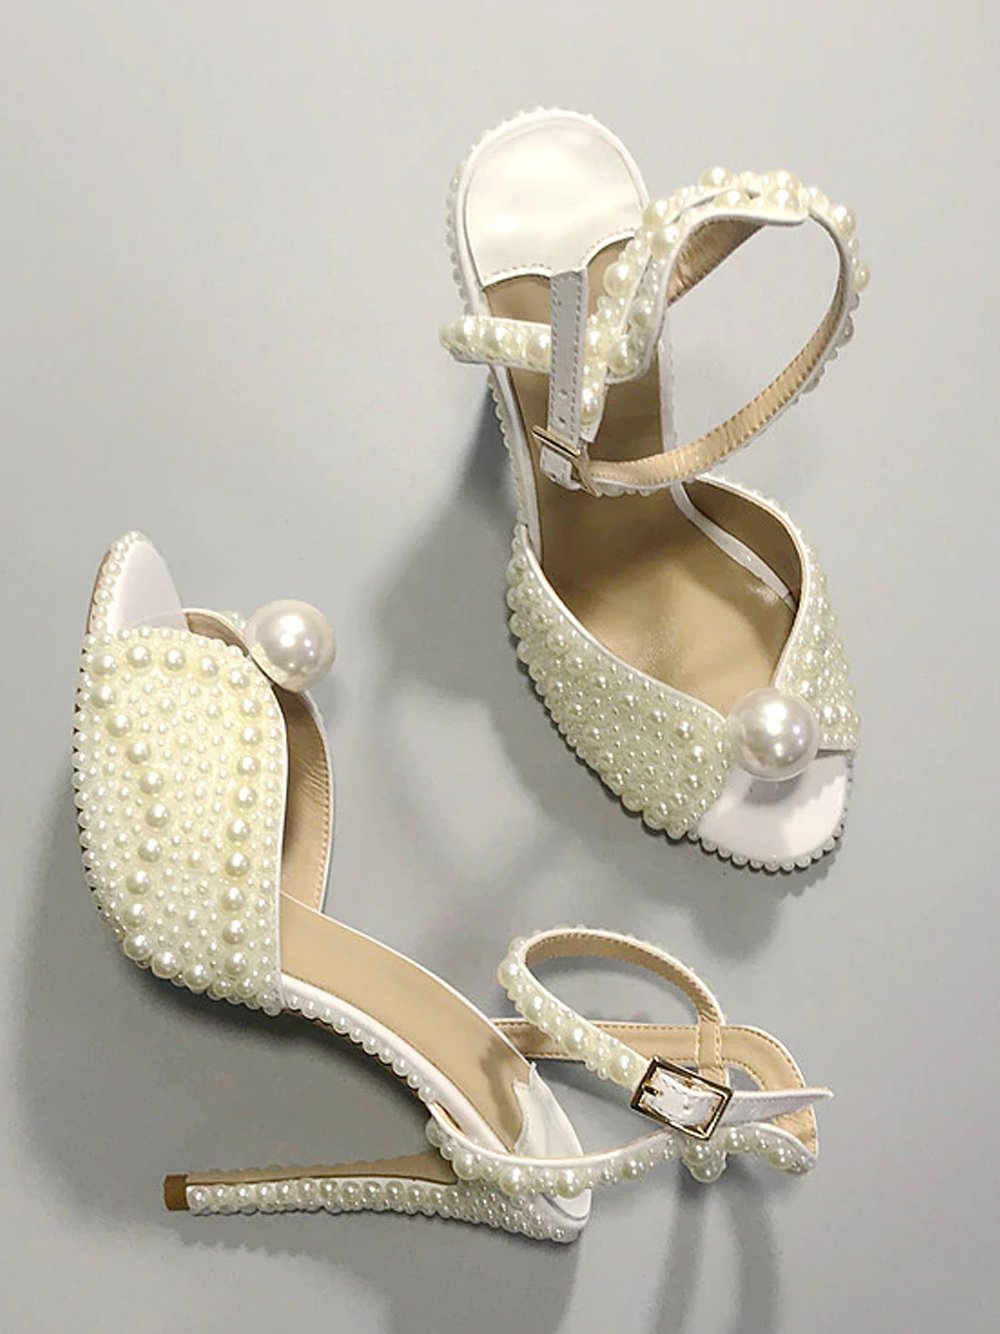 Vintage Pearls Sandals